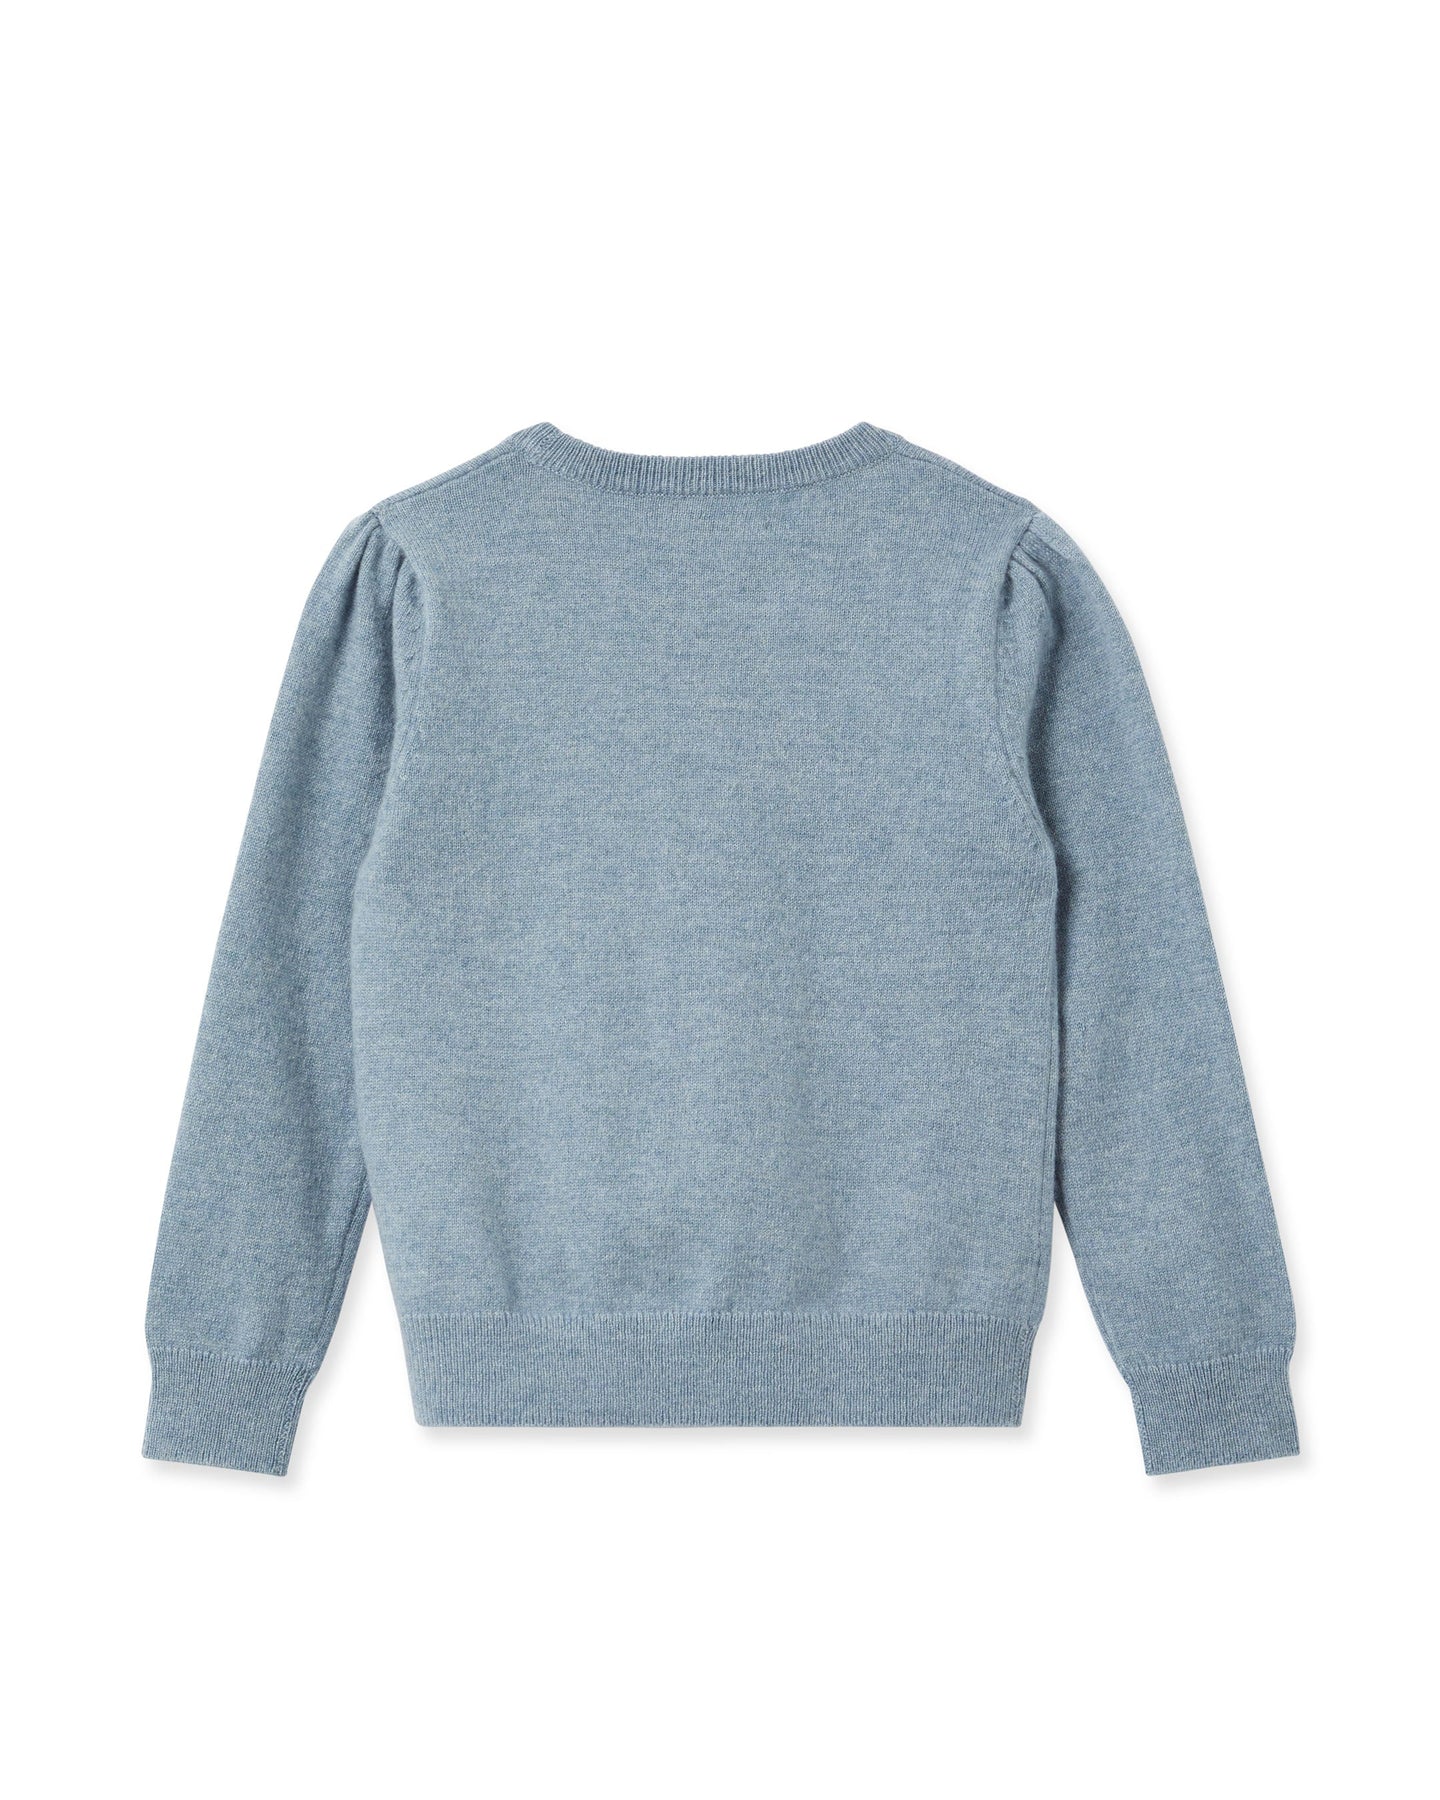 N.Peal Girls Round Neck Cashmere Sweater Heather Blue Dark Grey